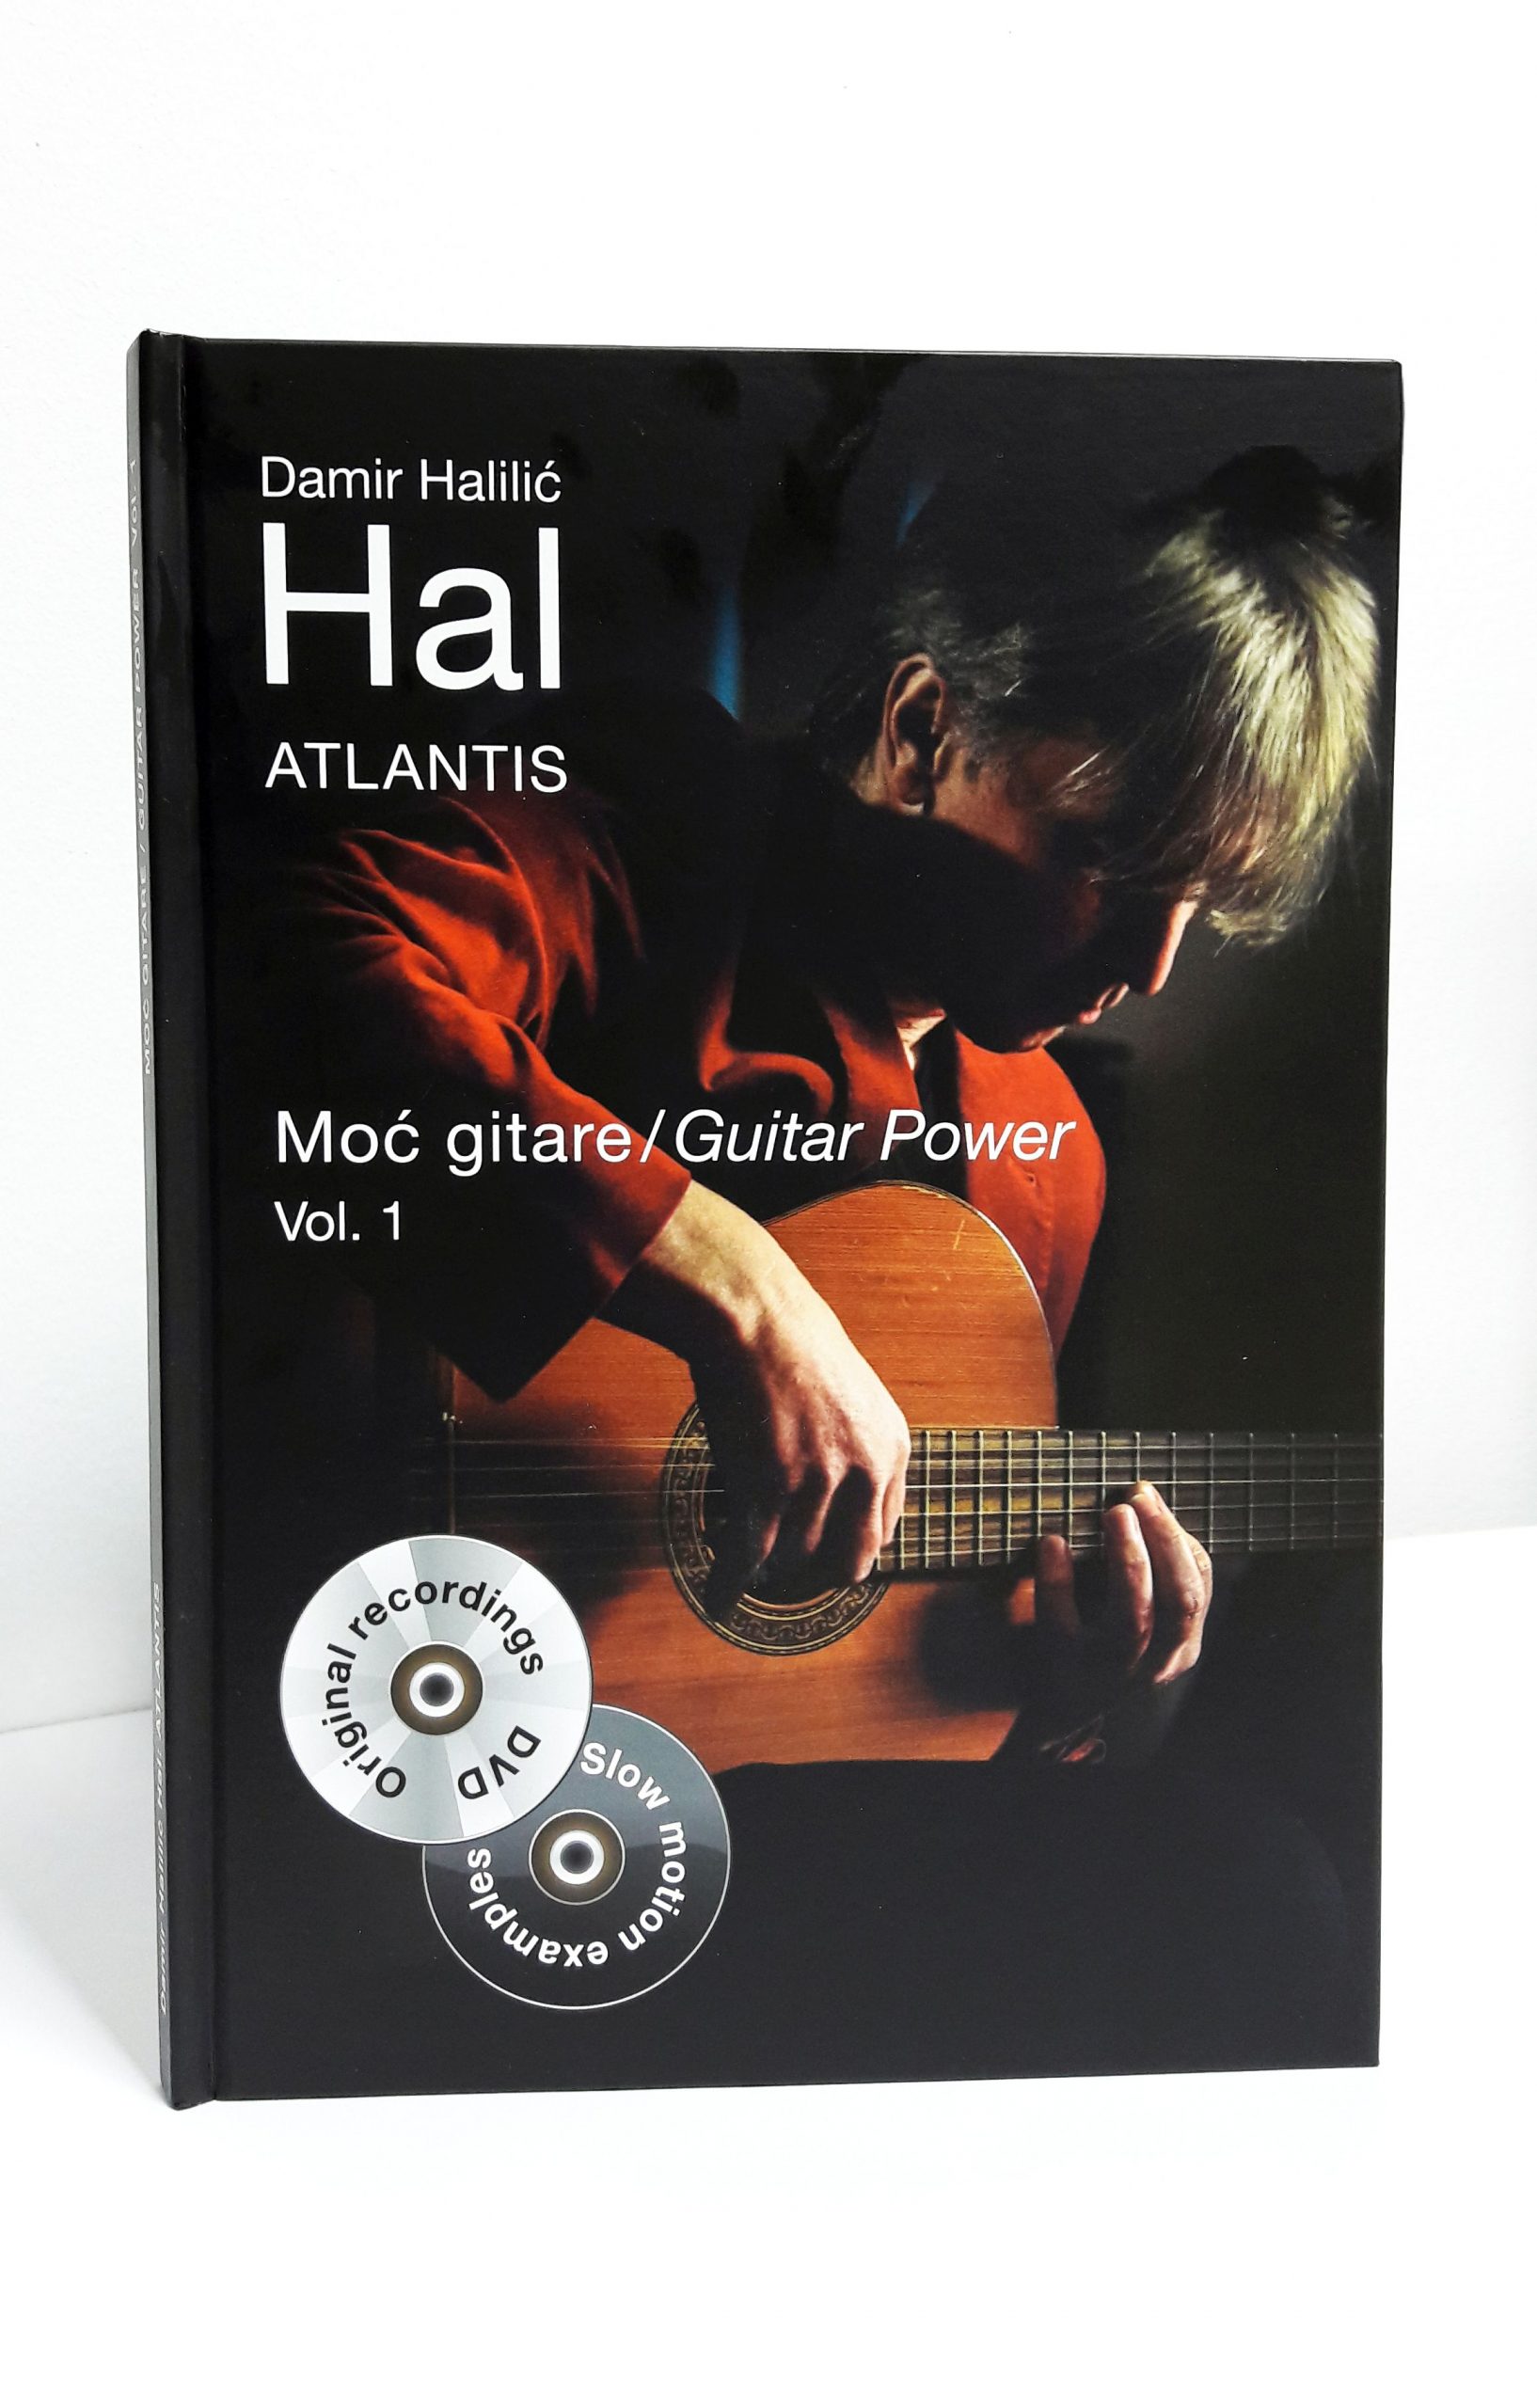 Pročitajte više o članku Gitaristički virtuoz i skladatelj Damir Halilić HAL objavio je luksuzno izdanje za sve gitariste! Knjigu s notnim zapisom+2 DVDa ‘Atlantis’